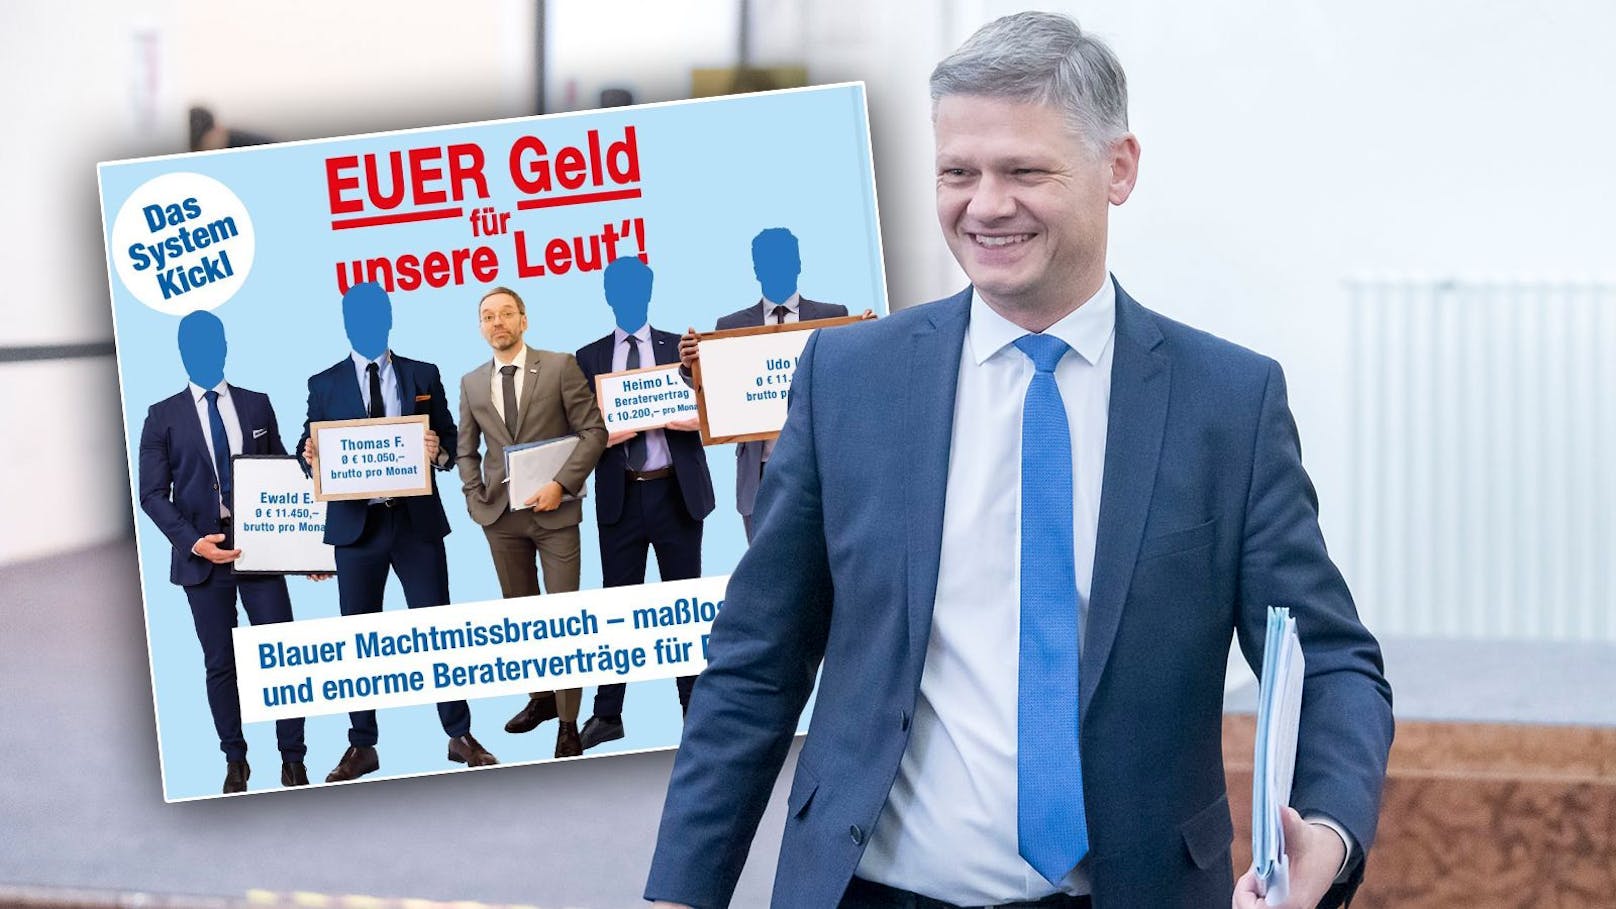 ÖVP wirft Kickl vor: "Euer Geld für unsere Leut"